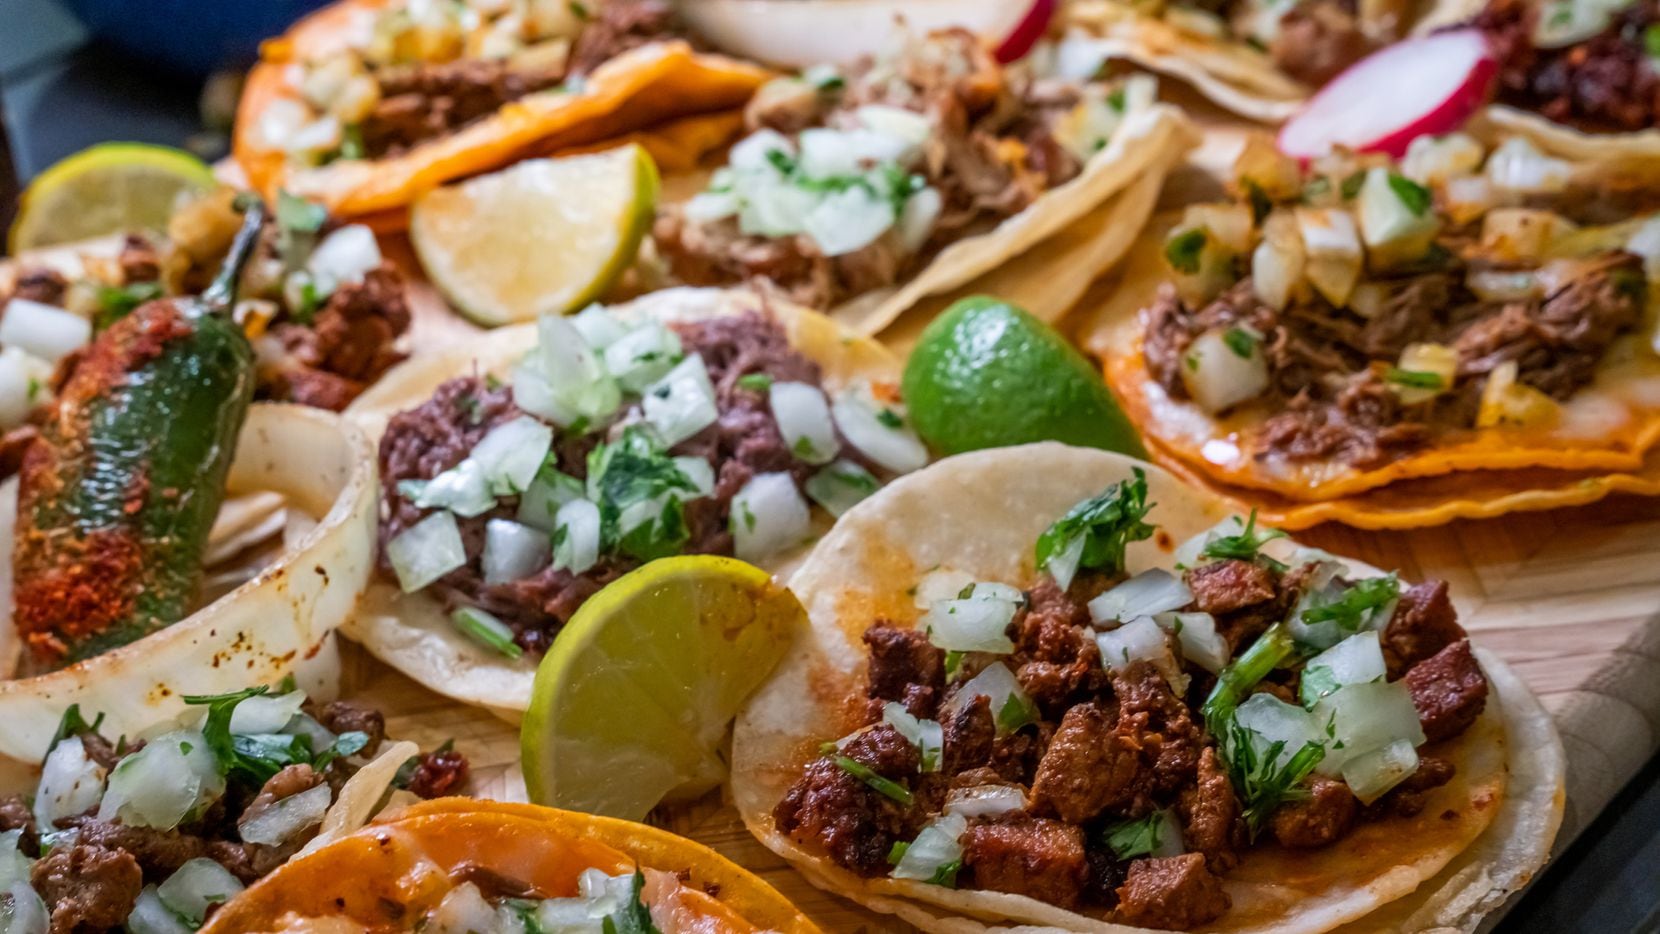 Los tacos son una de las comidas mexicanas más tradicionales y con más variedad, y cuando se...